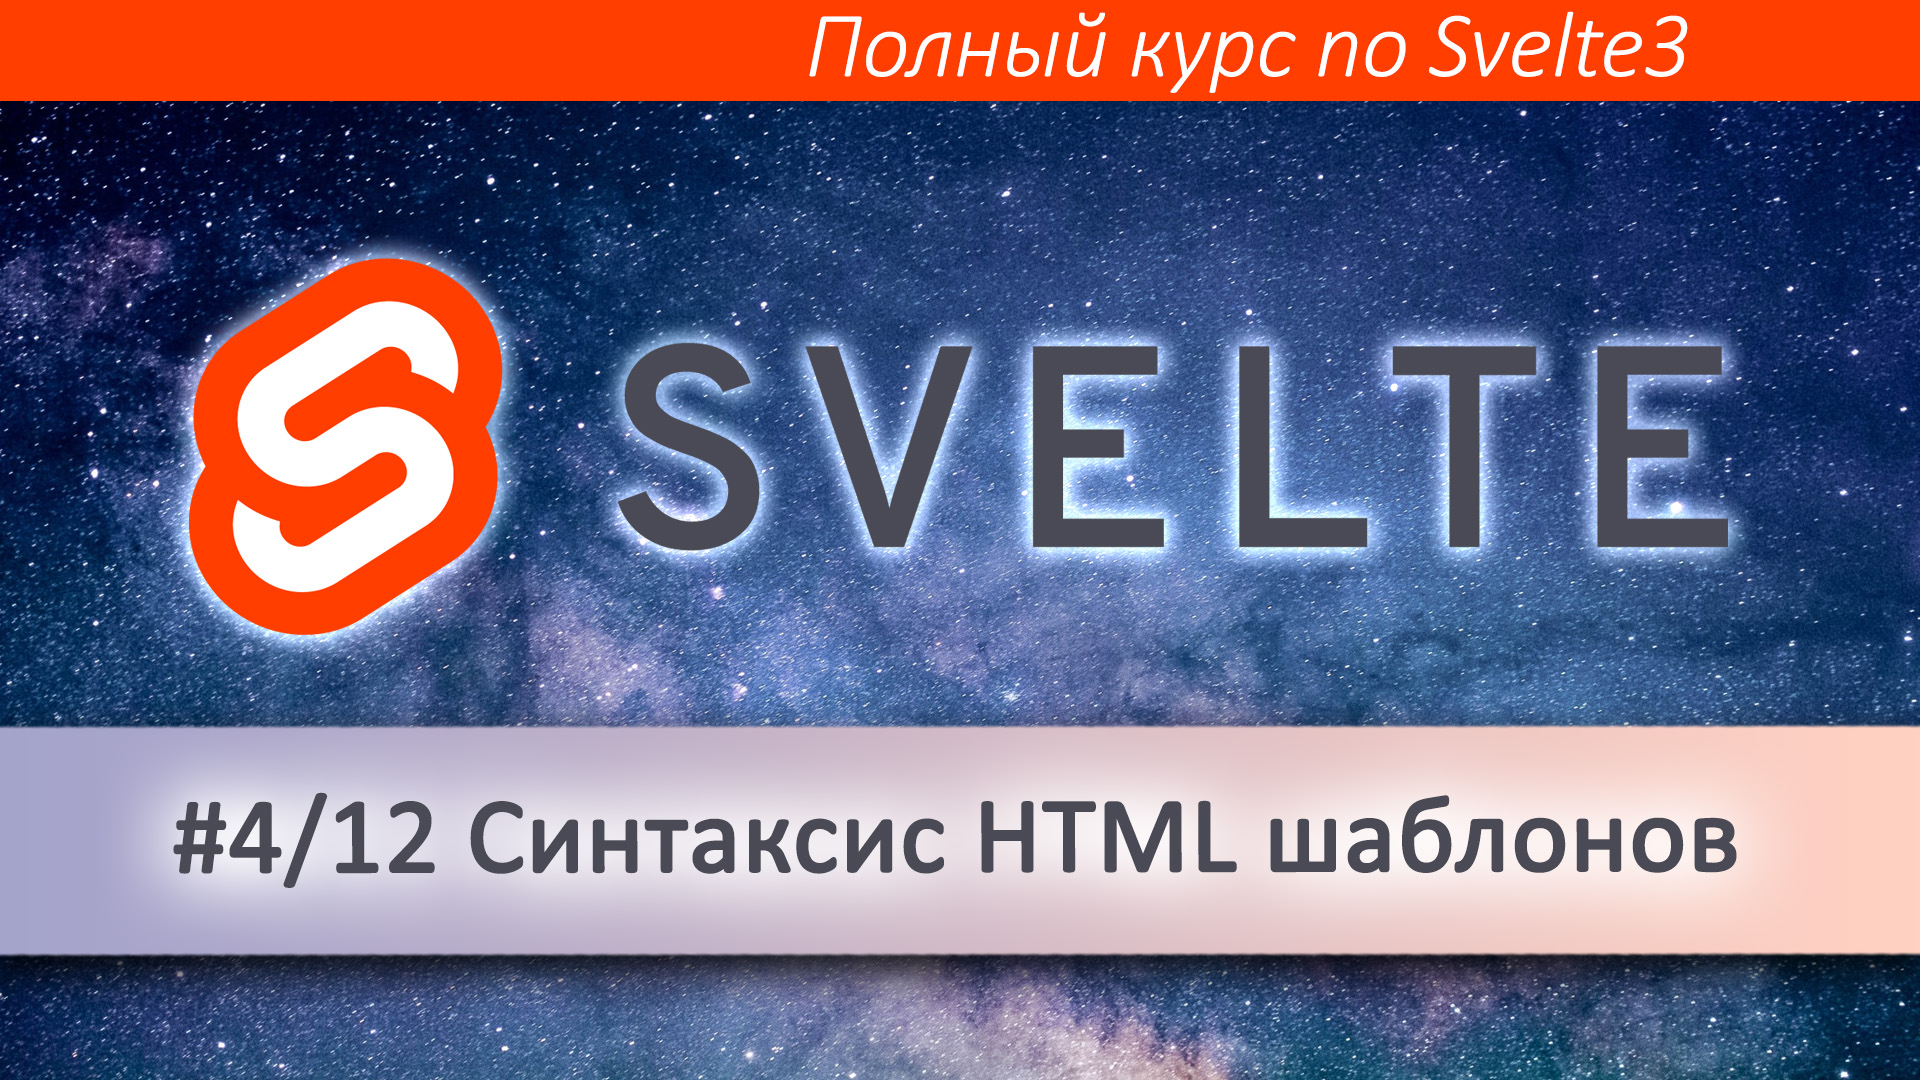 HTML шаблоны в Svelte